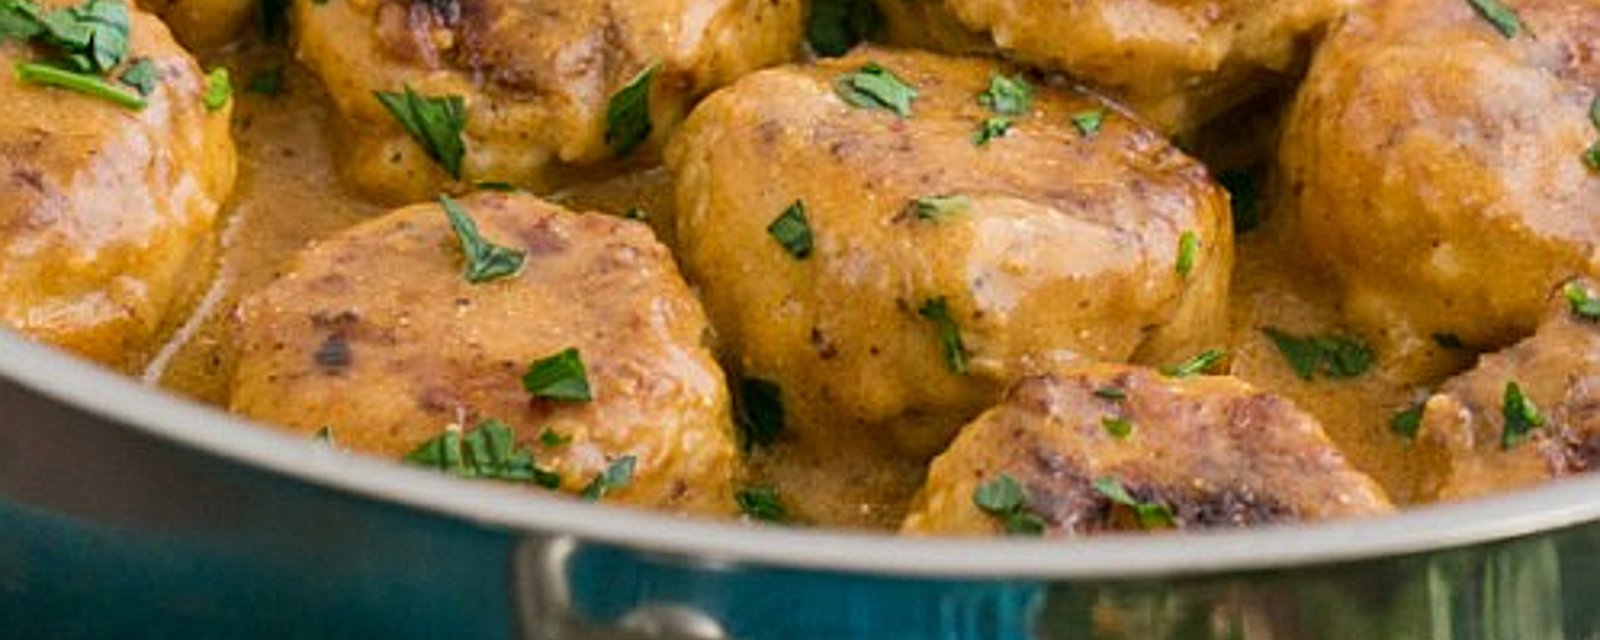 Boulettes de poulet dans une sauce crémeuse, délicieuses même une fois réchauffées!